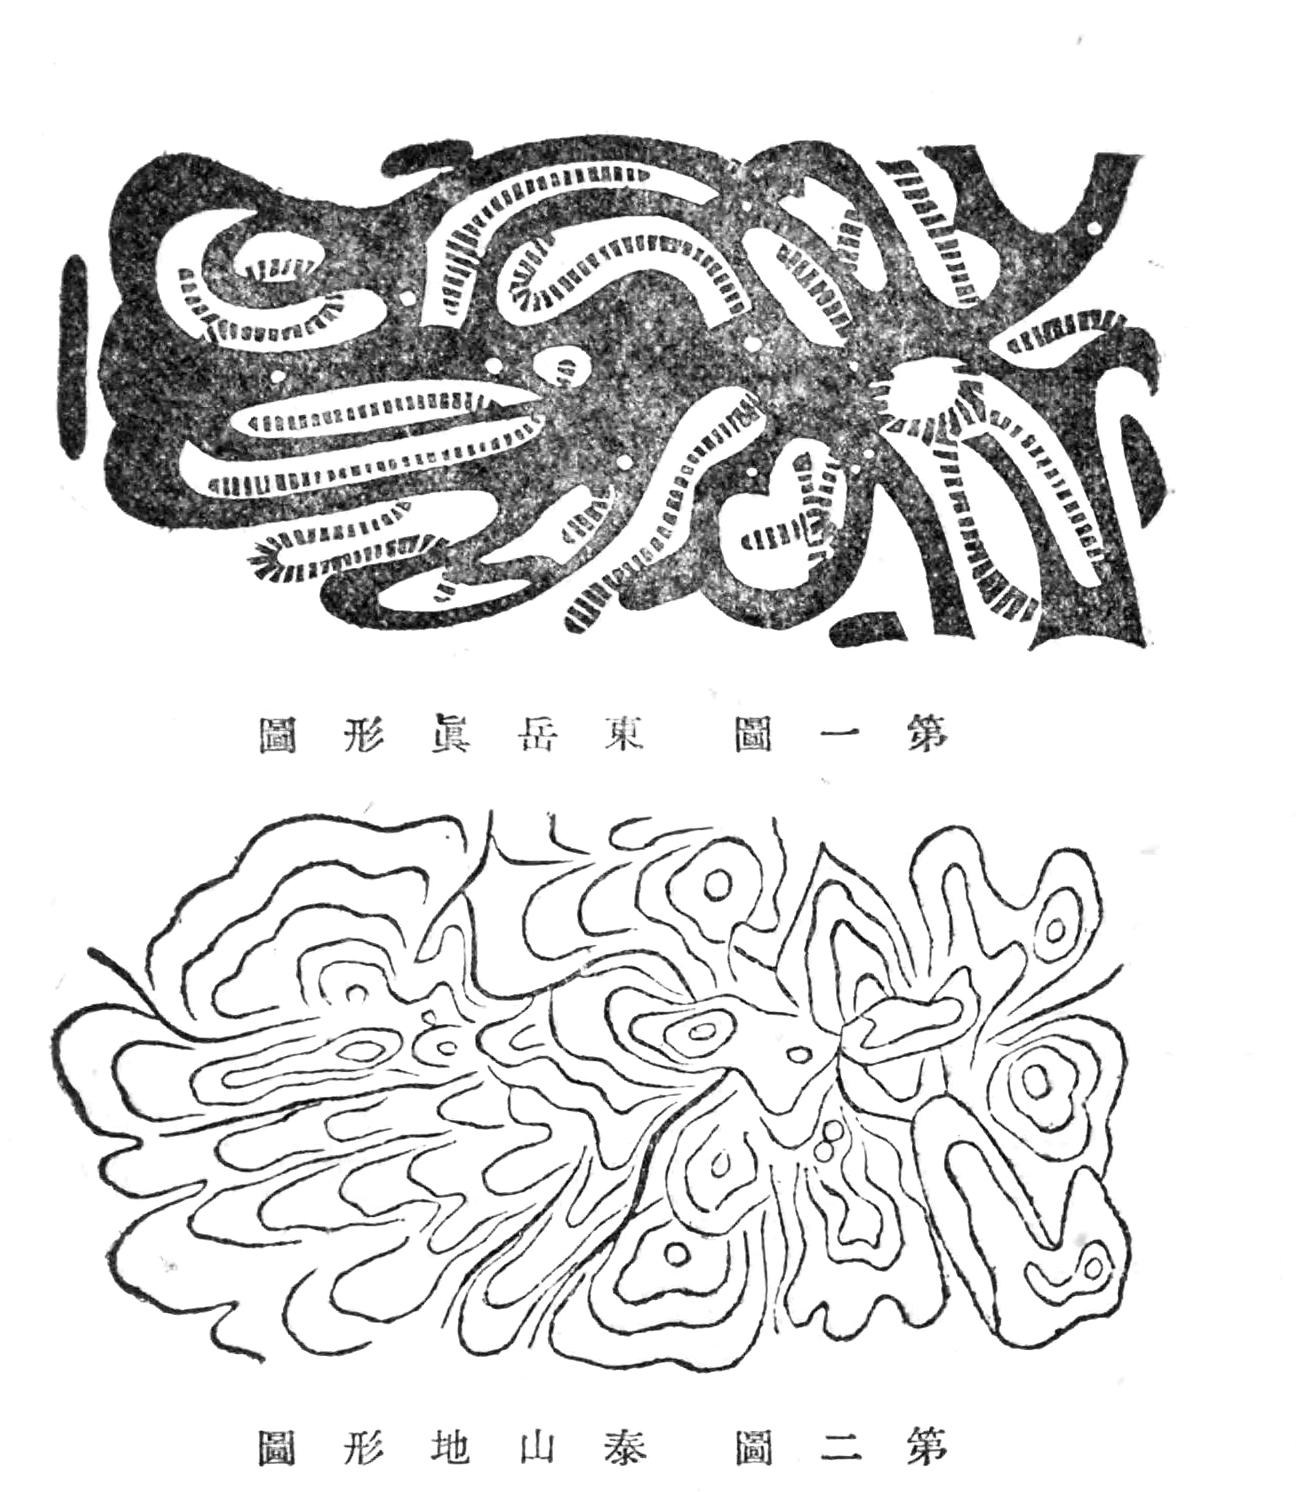 图6 富冈铁斋旧藏《东岳真形图》（上）与小川琢治所绘《泰山地形图》（下）[43]